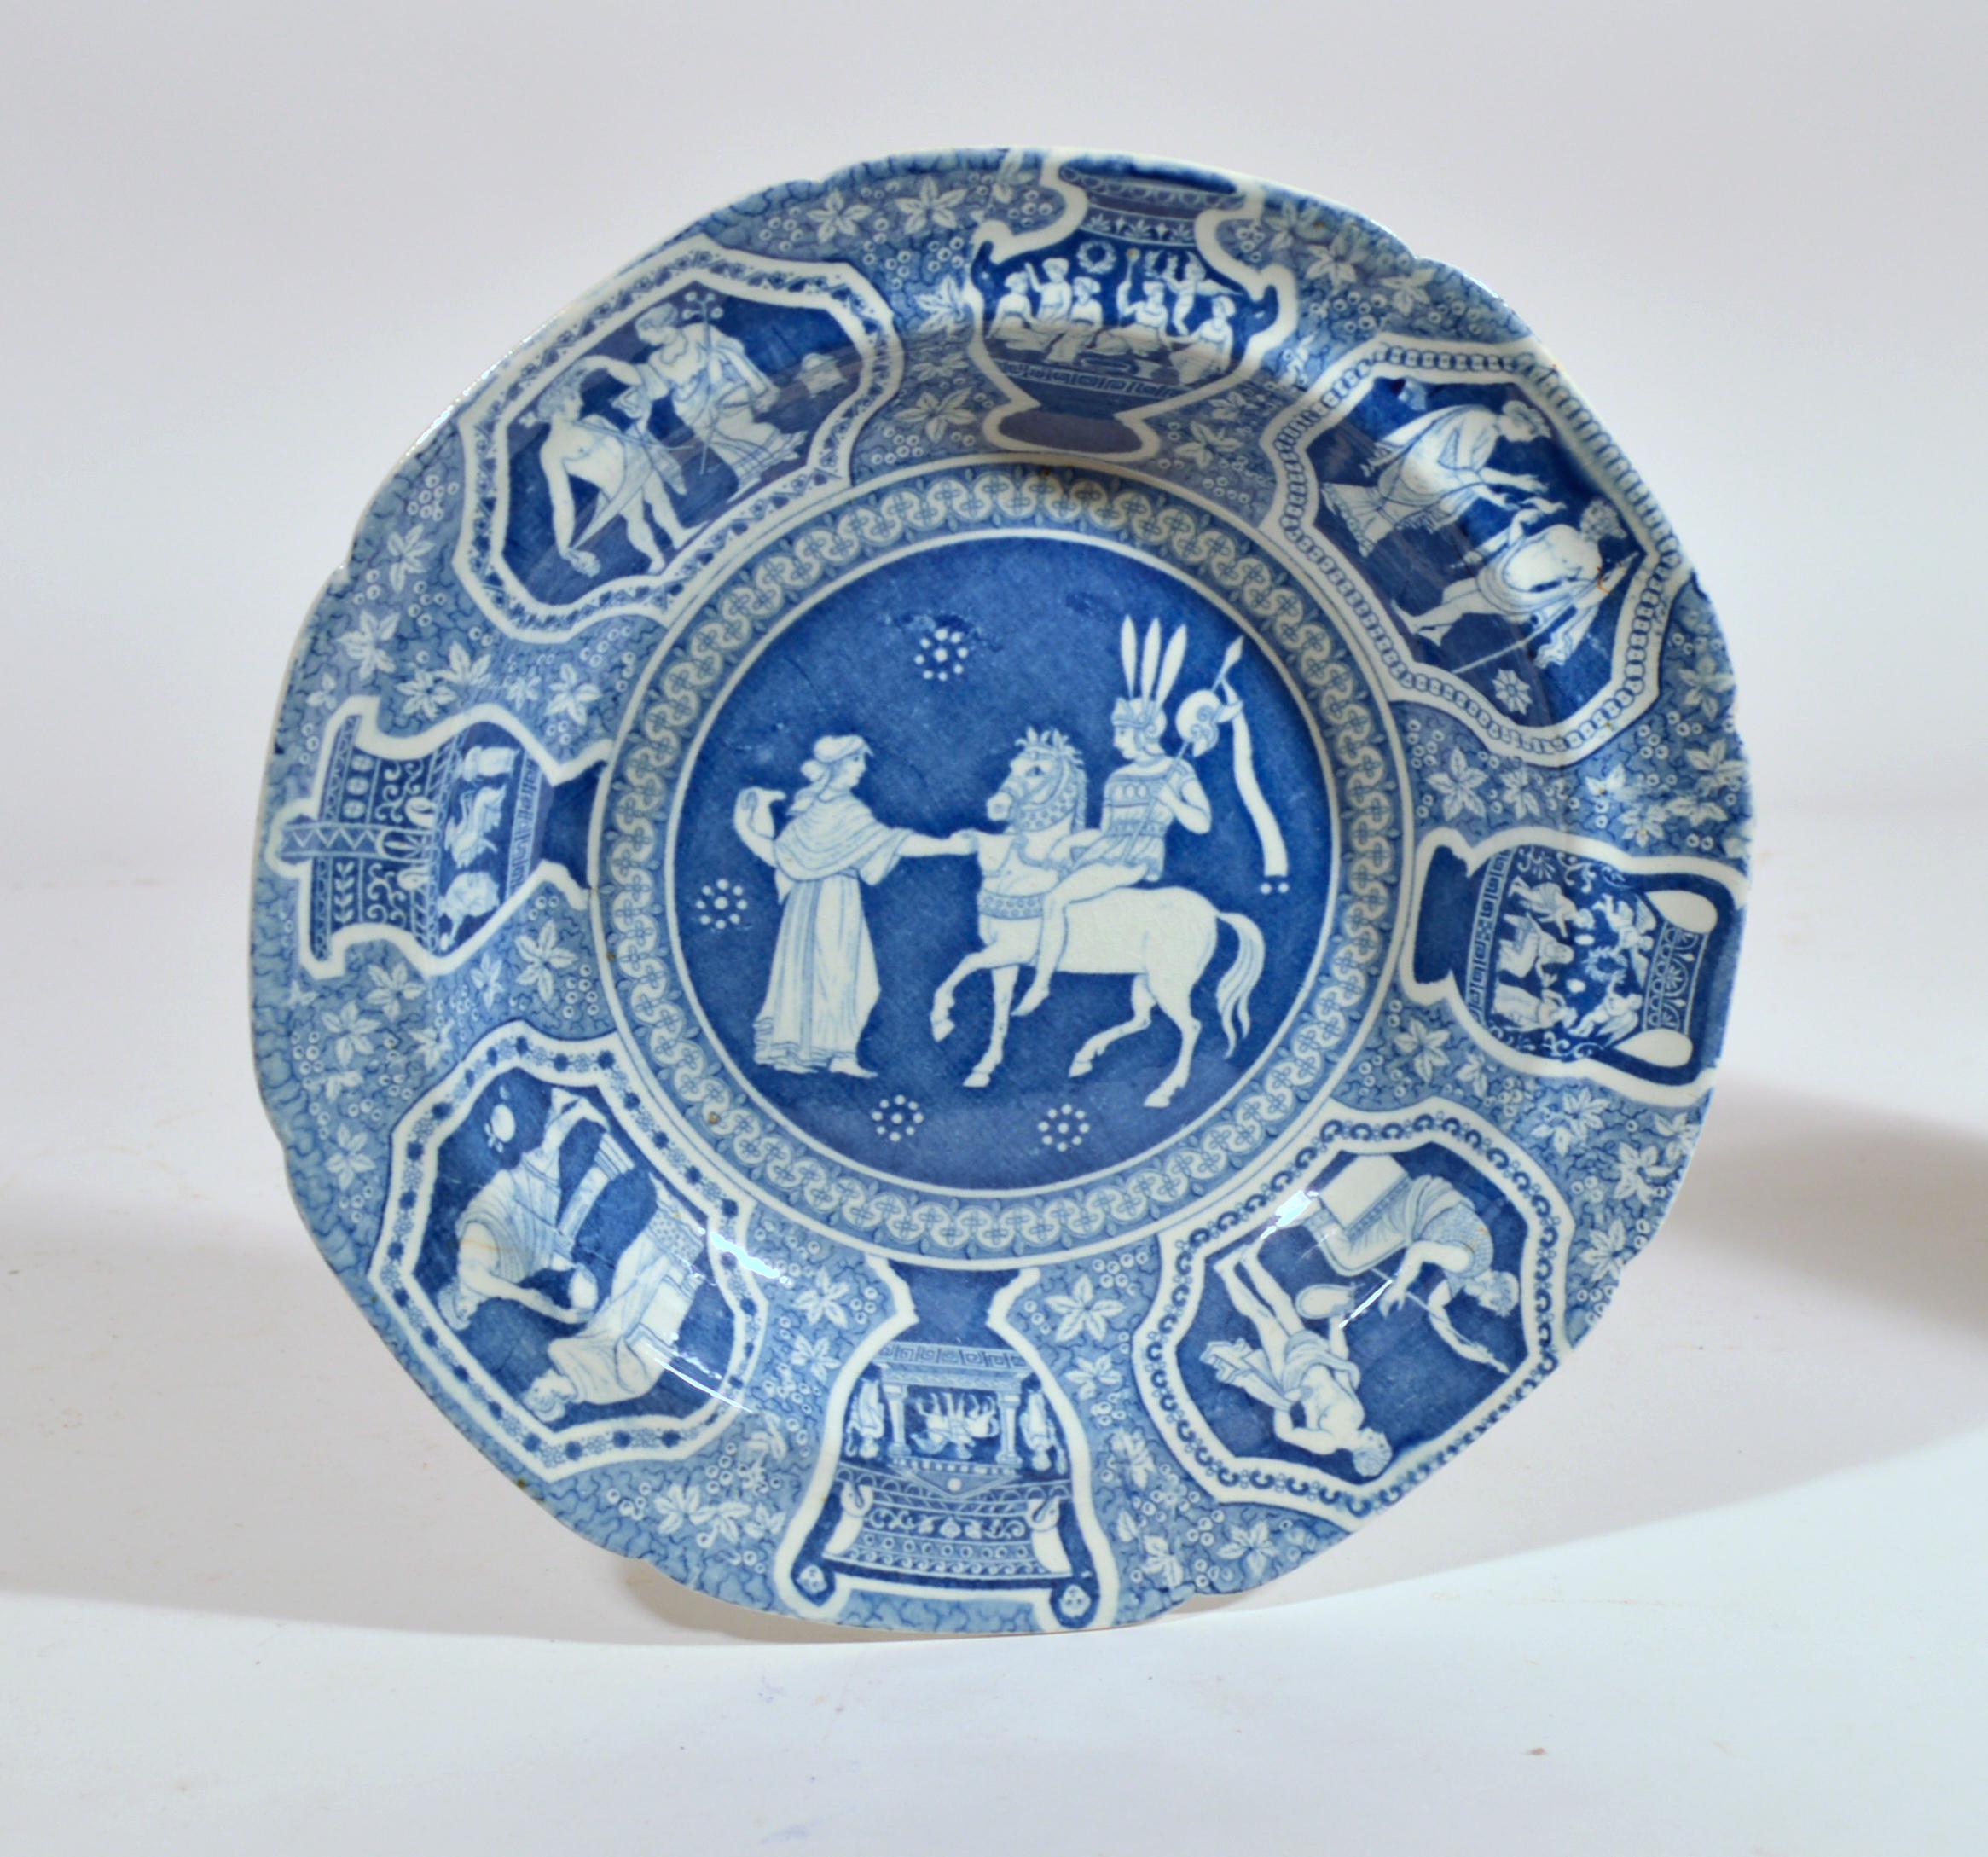 Assiettes à soupe bleues Spode à motif grec néo-classique,
Rafraîchissement pour le cavalier phliasien,
Jeu de douze (12)
Début du 19e siècle 

L'assiette en poterie Spode à motif grec est imprimée en bleu avec 